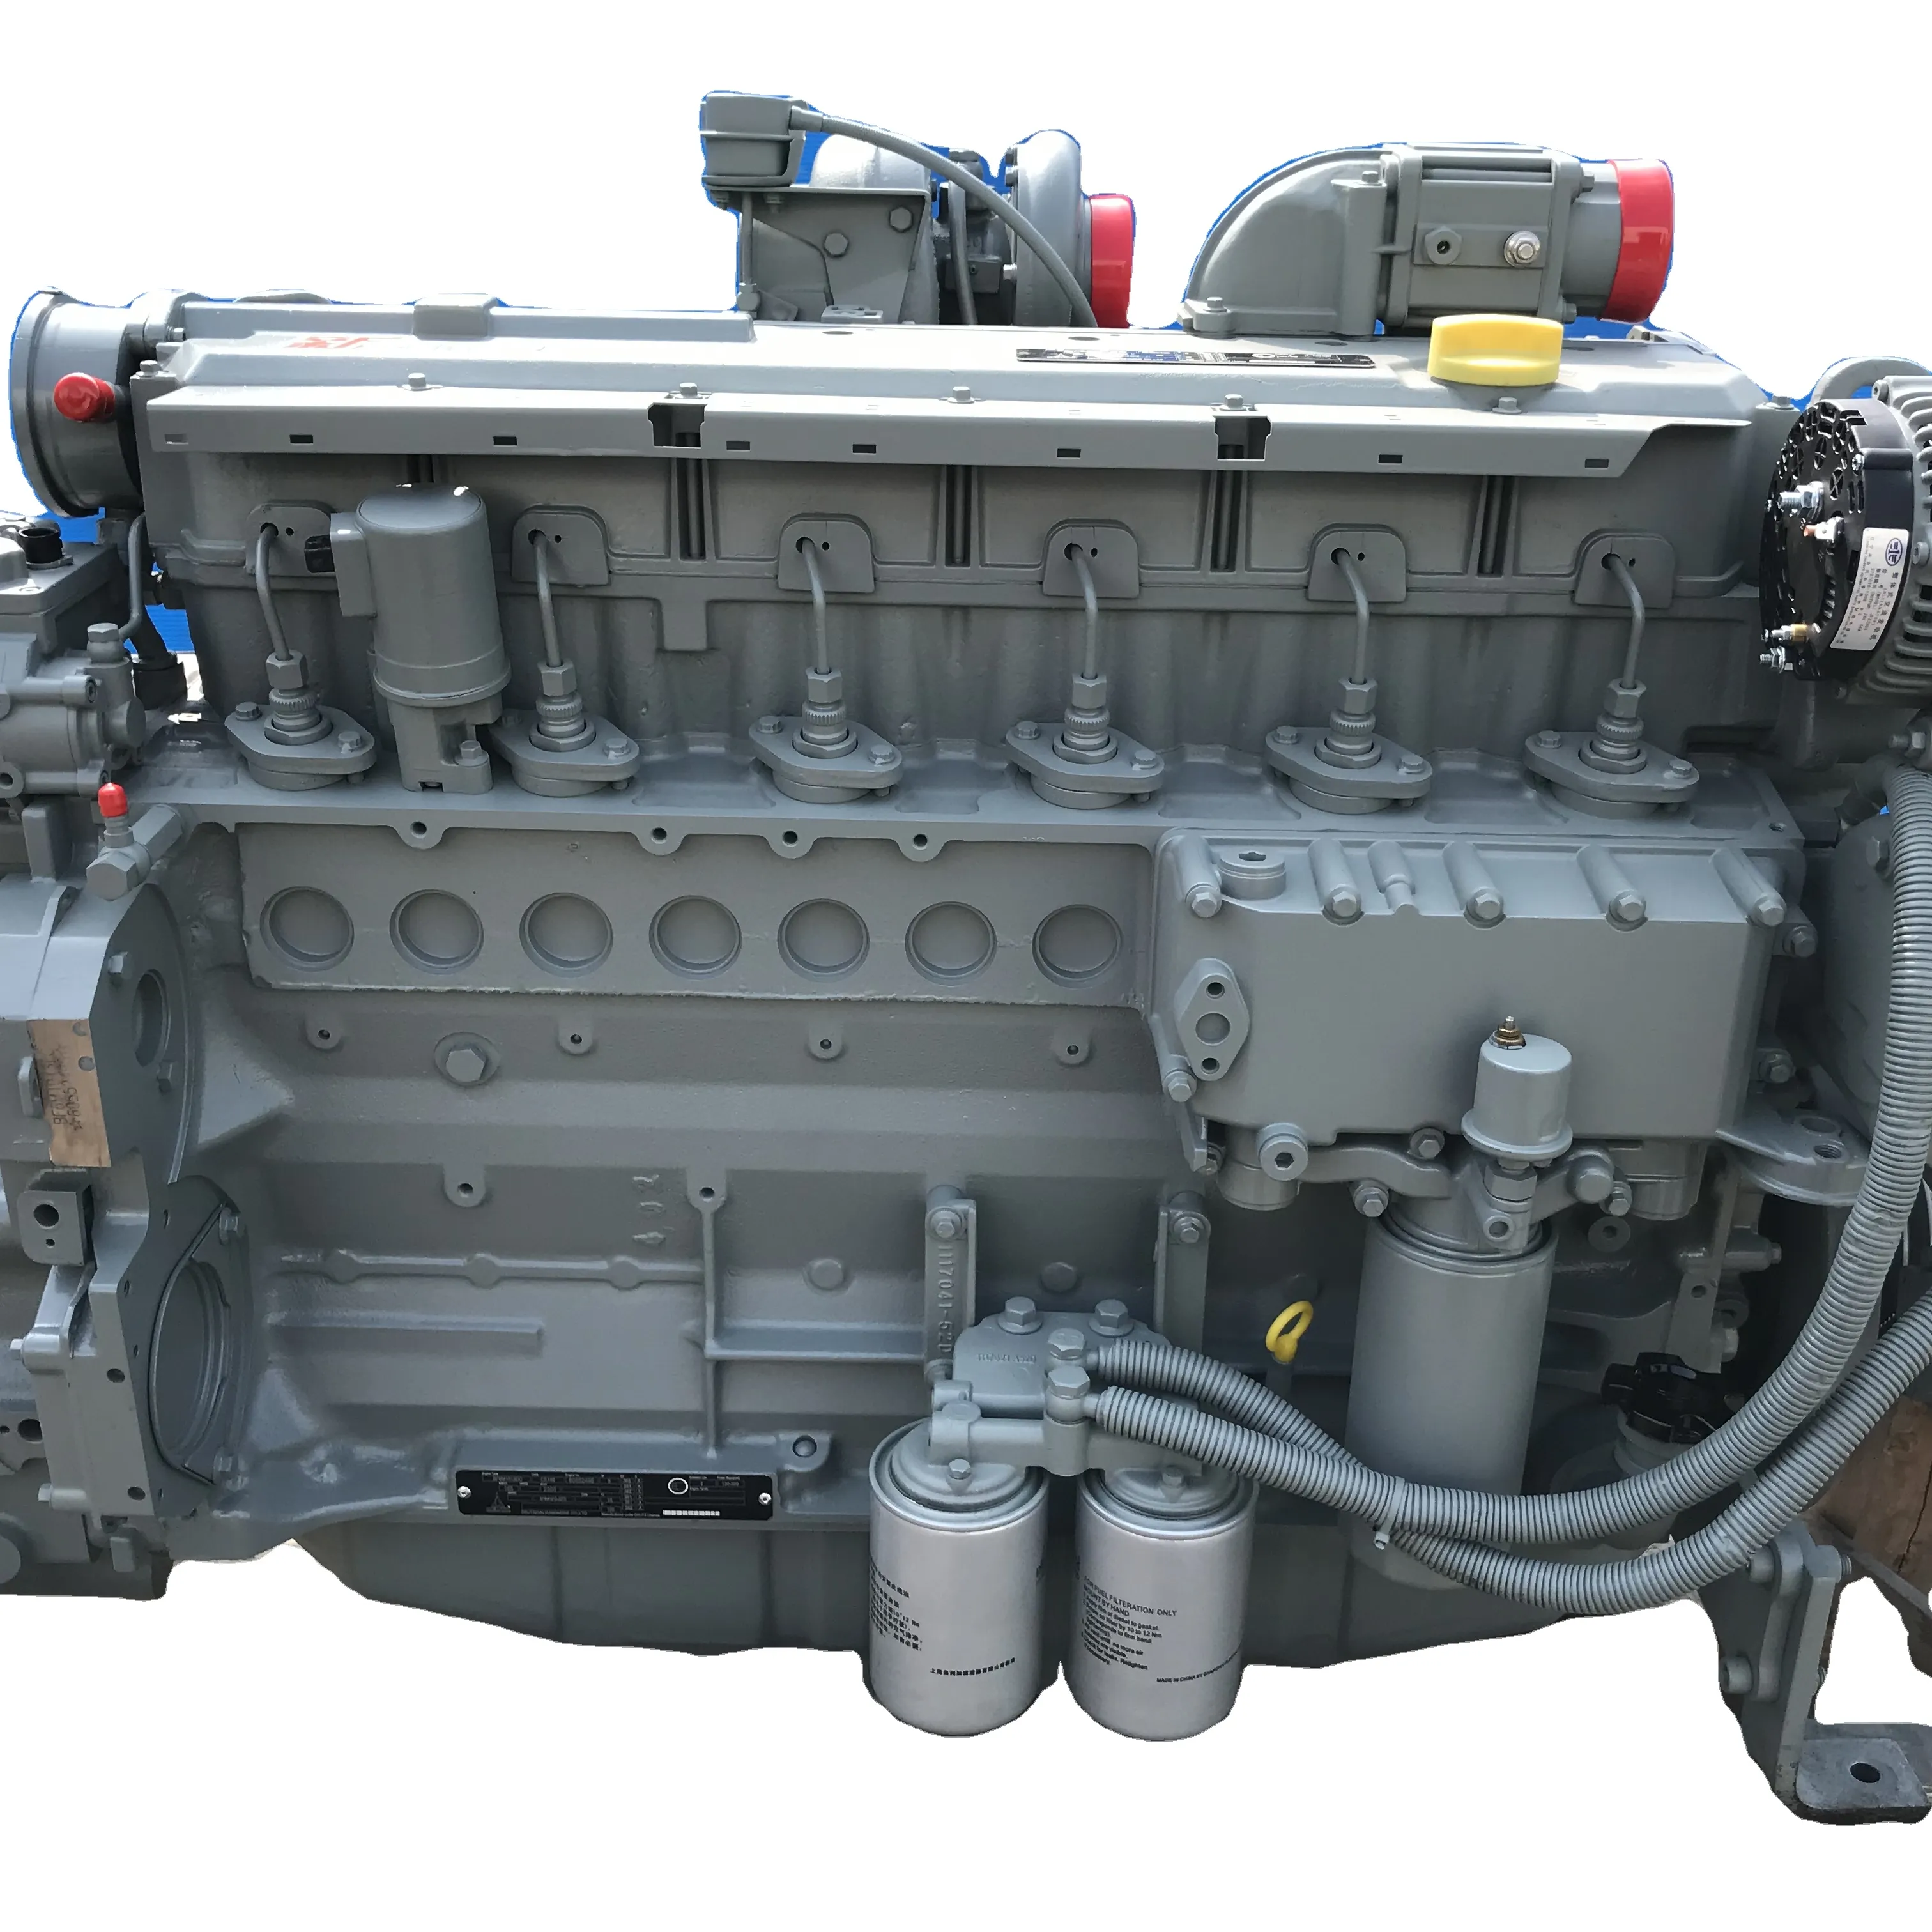 Venta caliente Deutz 6 conjunto de motor diésel de refrigeración por agua BF6M1013EC motor diésel original completo BF6M1013EC